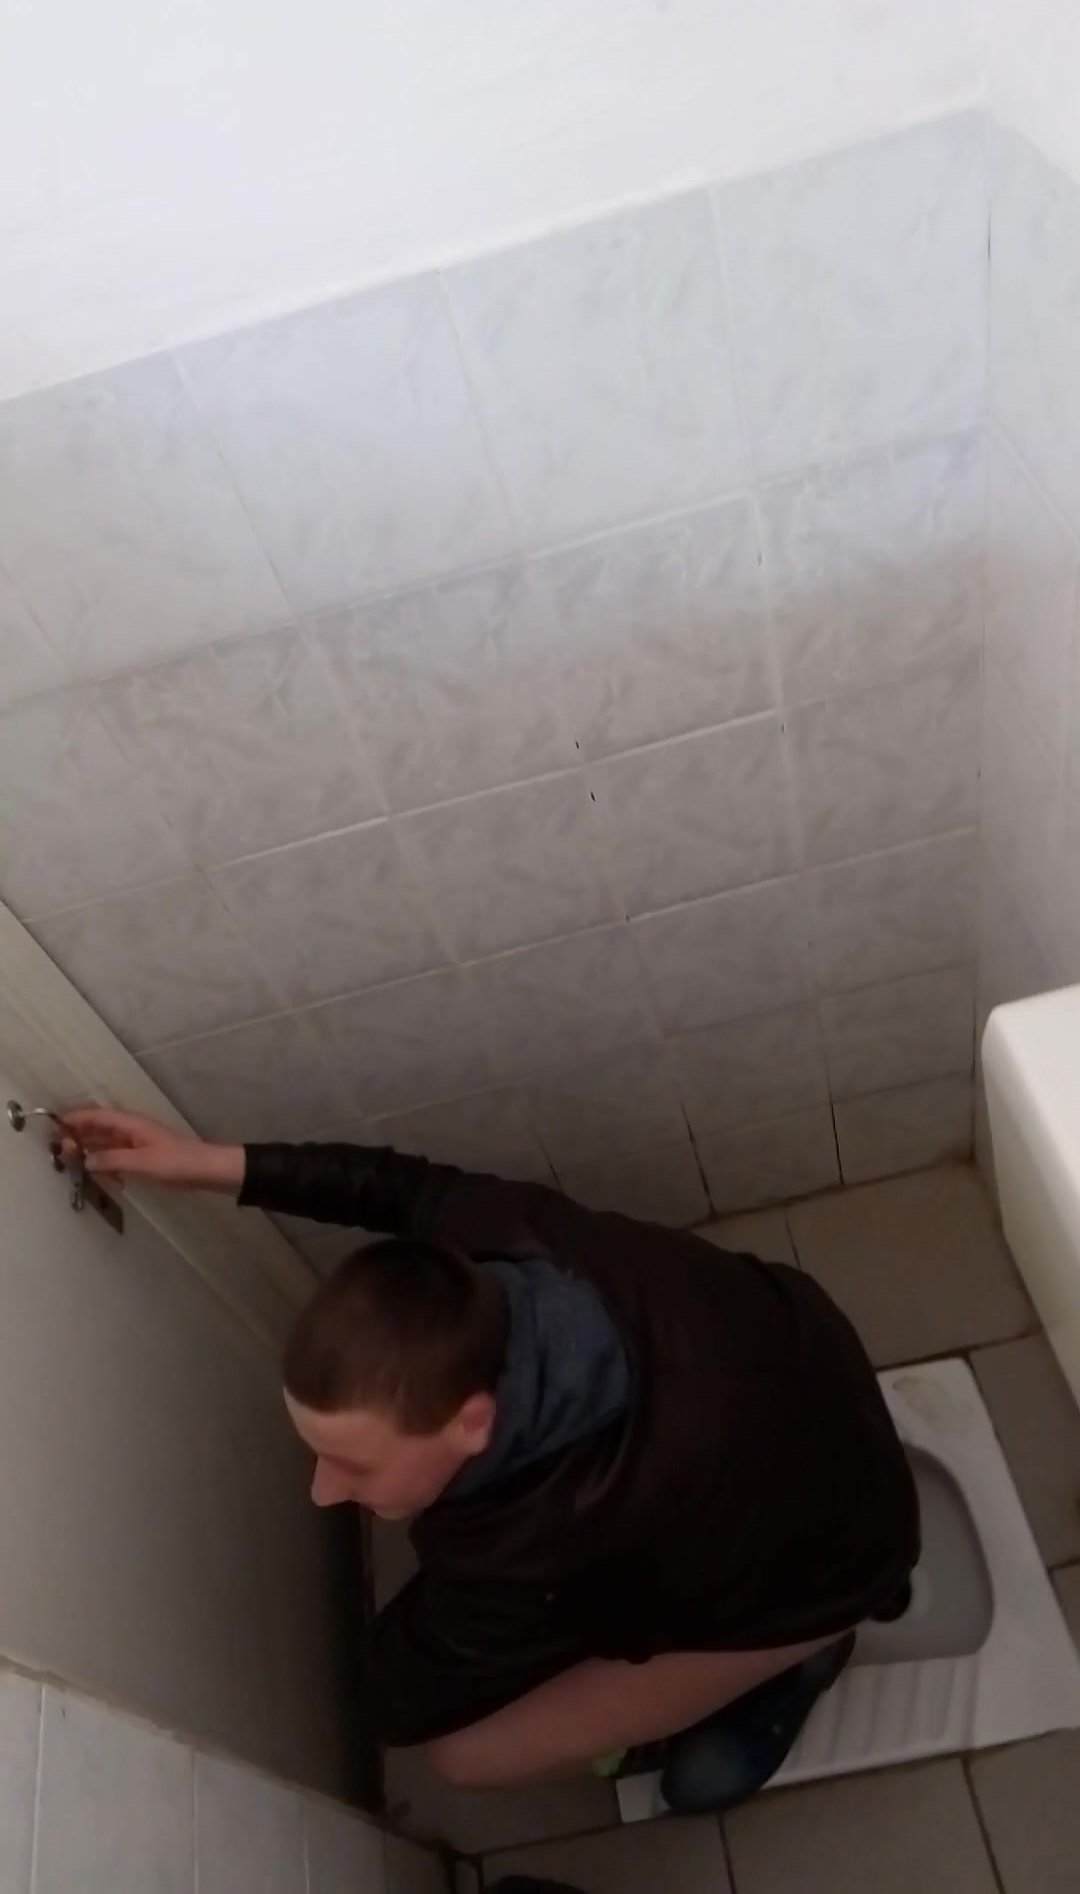 män squat toalett voyeur